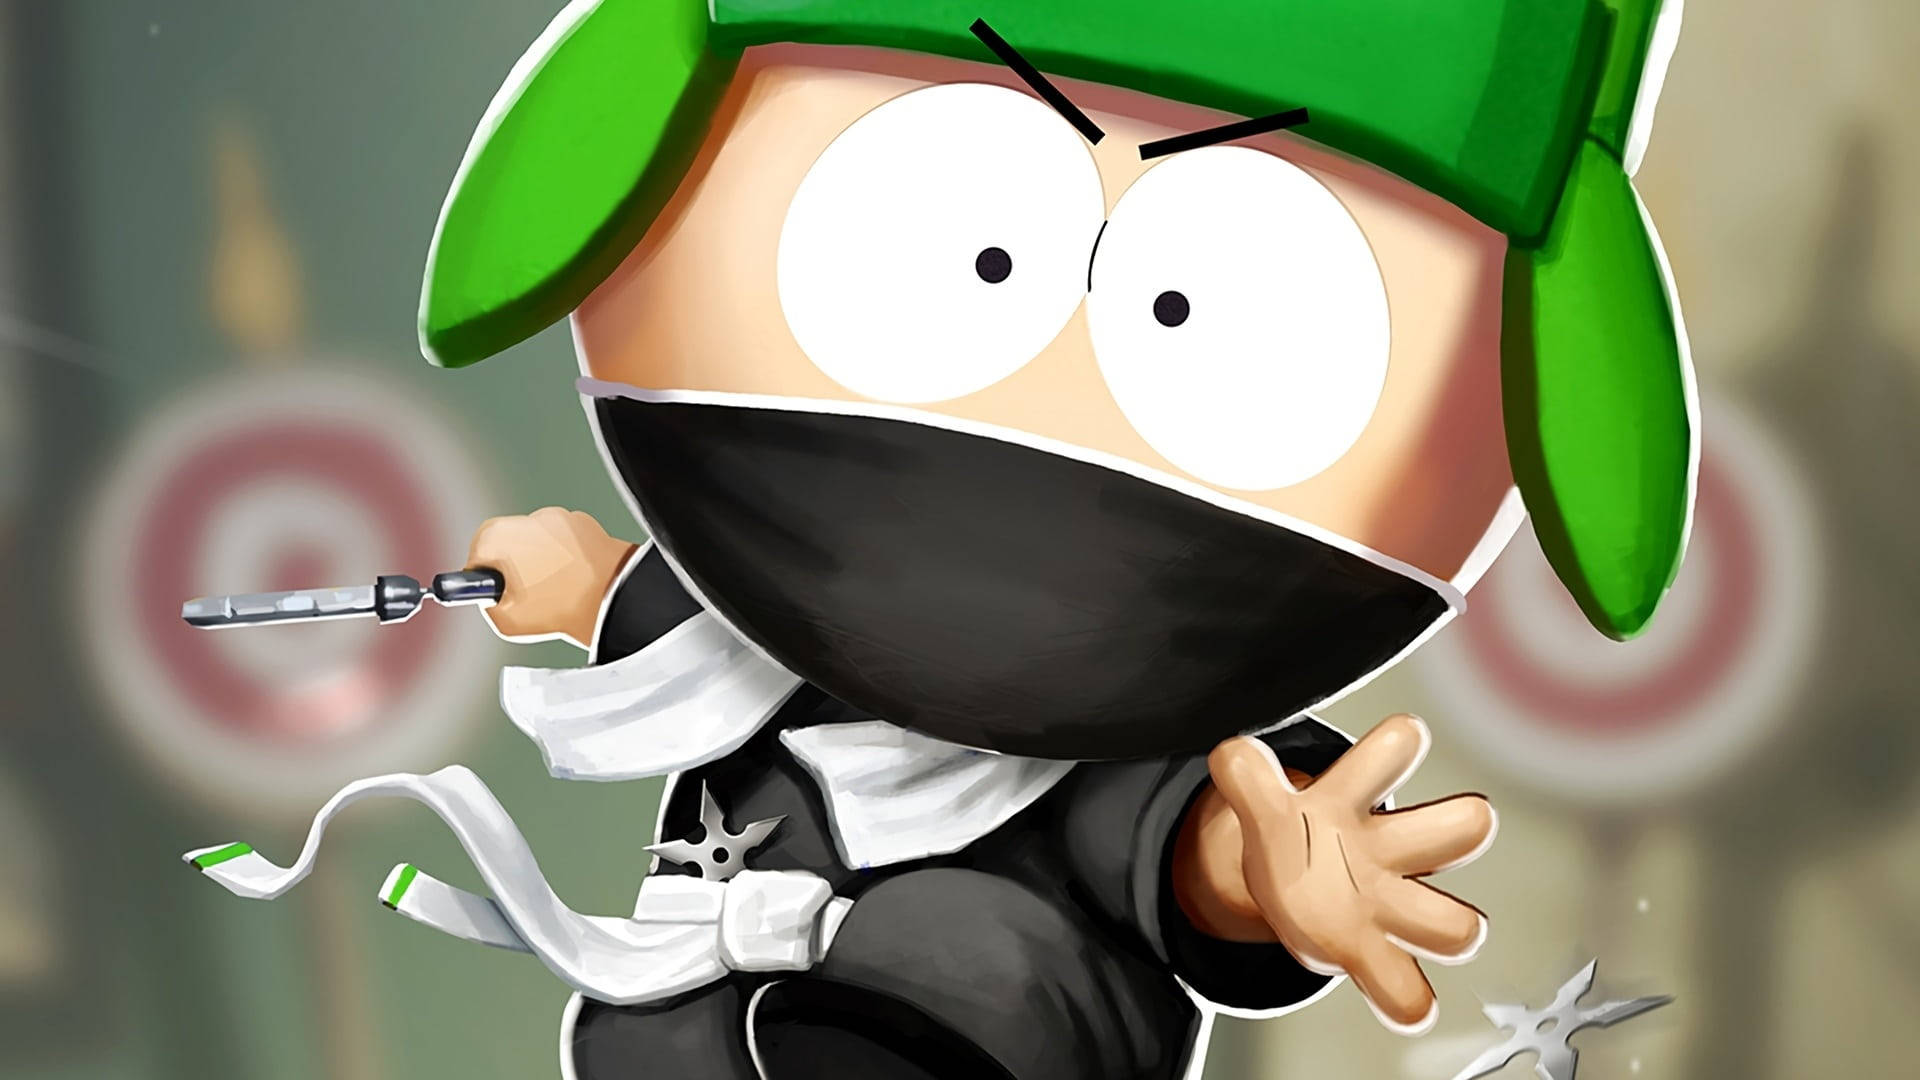 South Park Kyle Broflovski Ninja Art Background